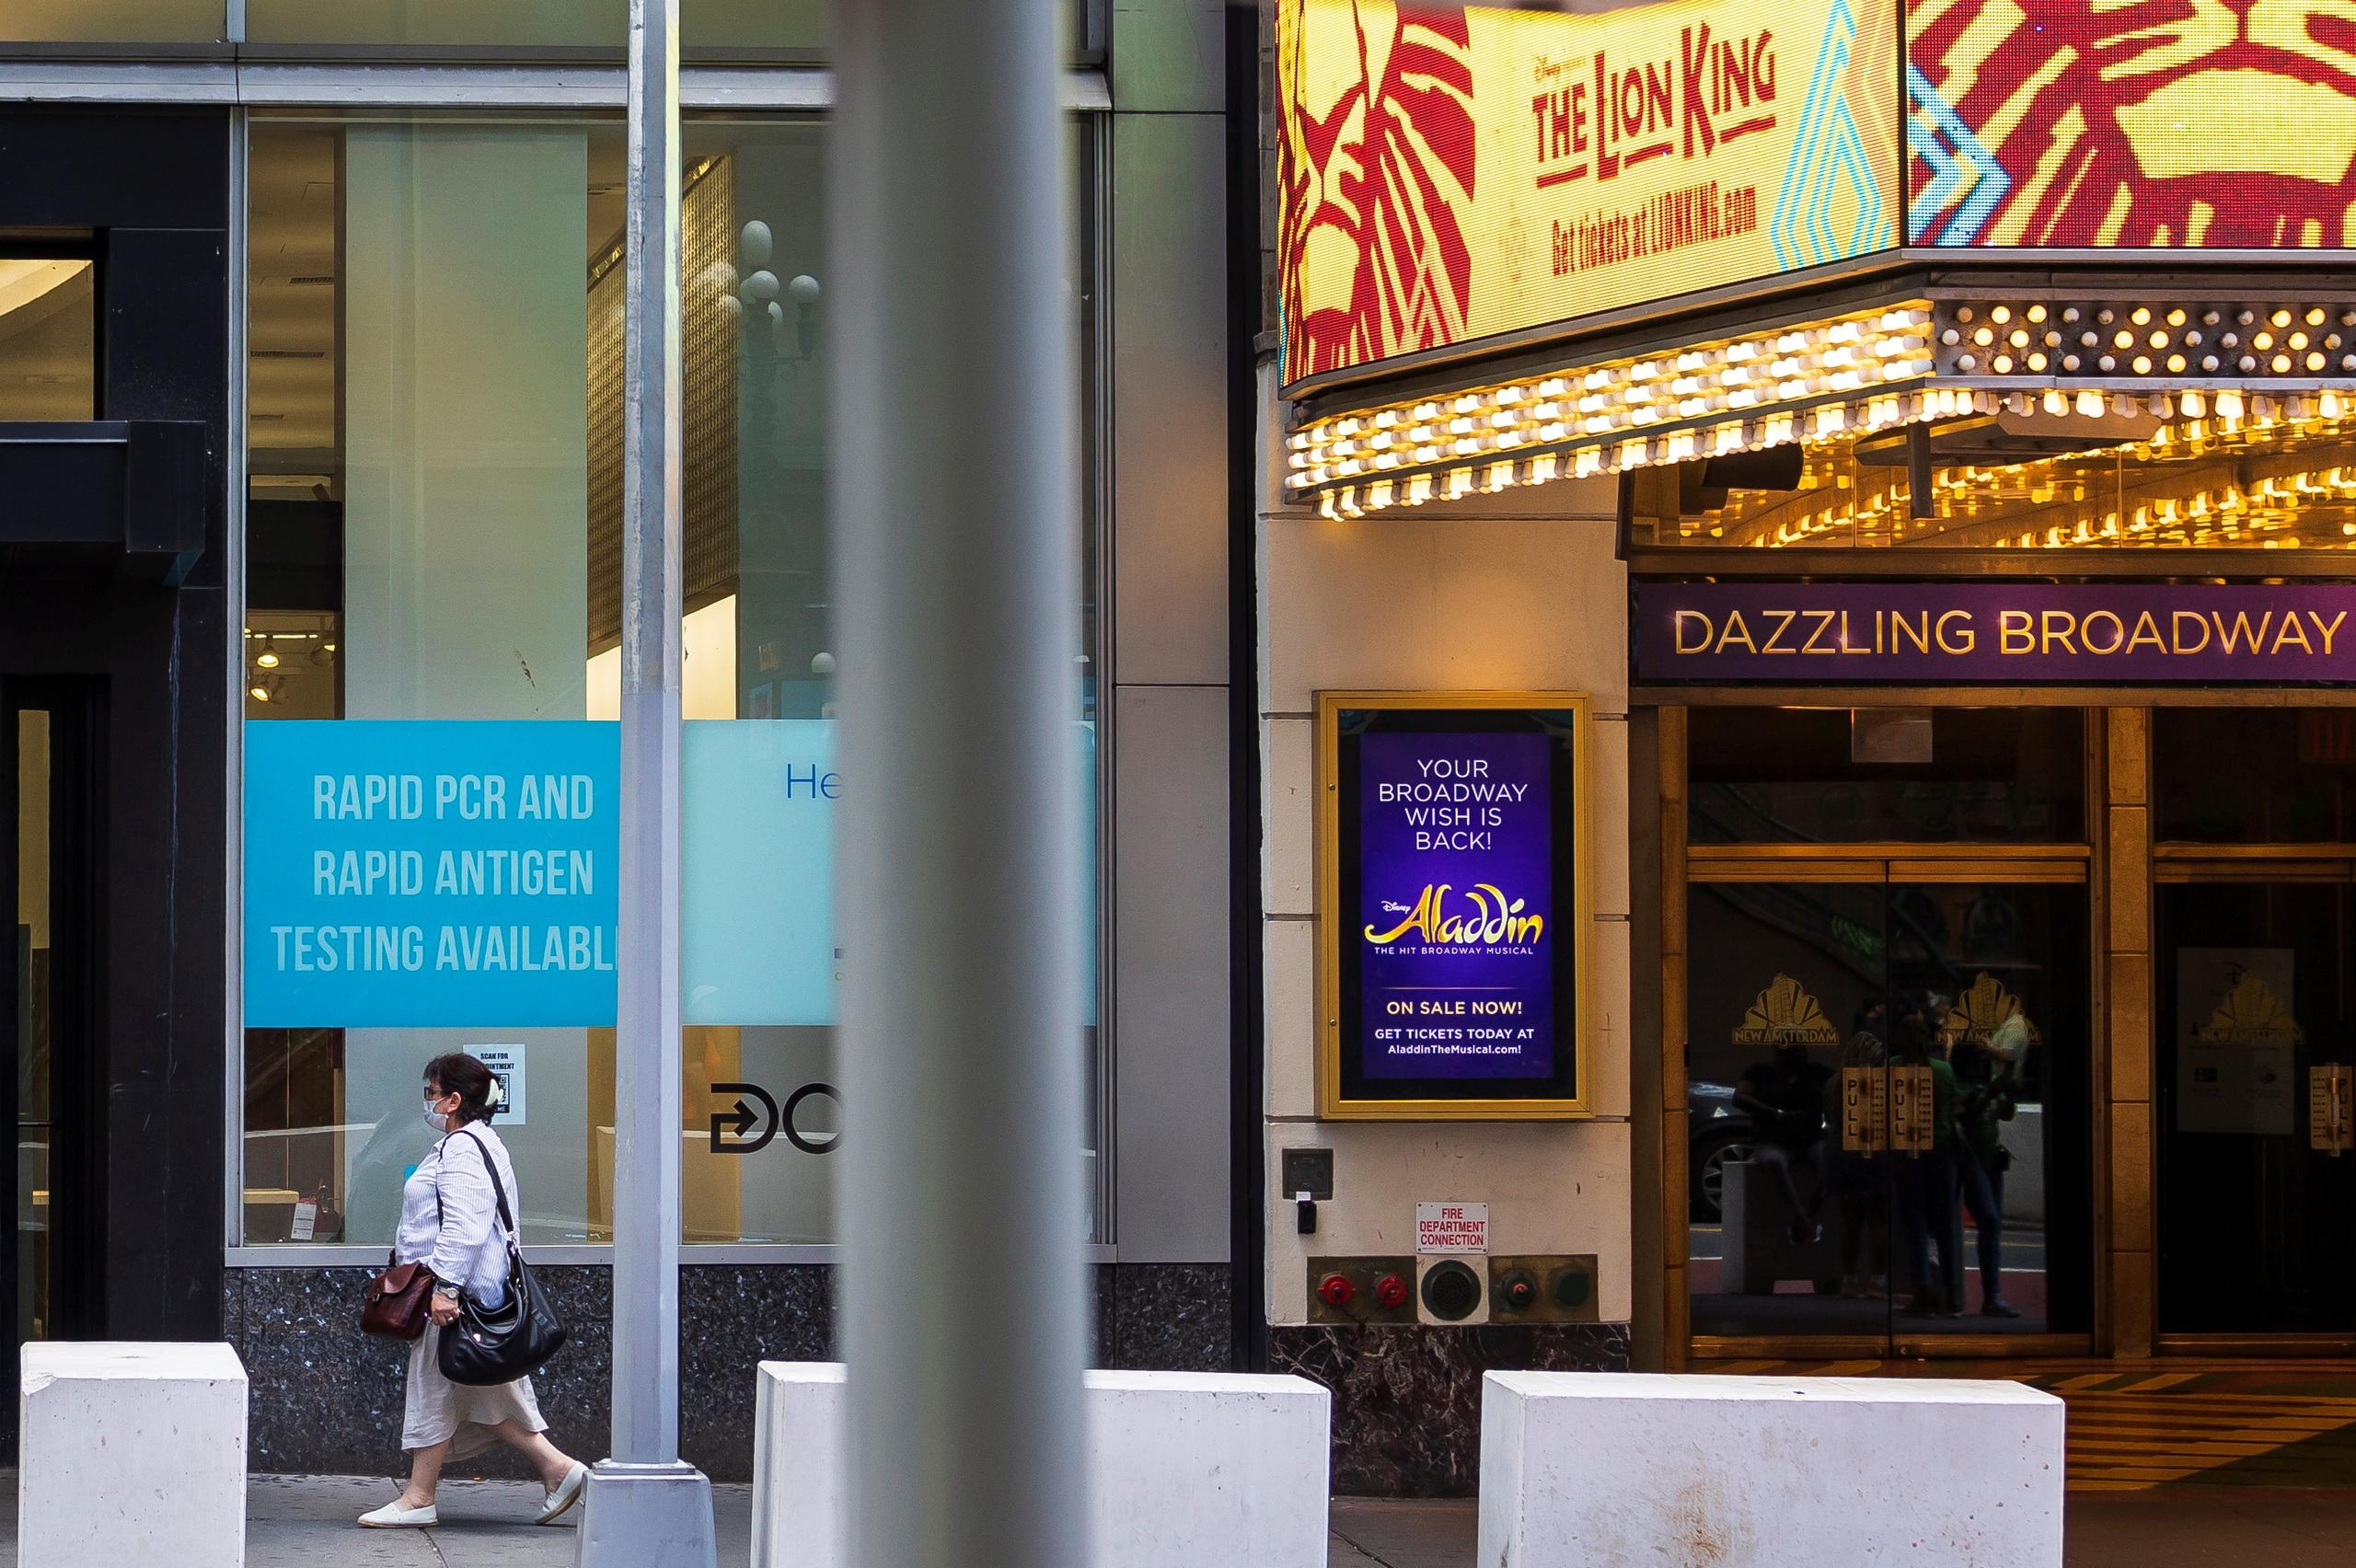 En plena reapertura de Broadway, algunas de las organizaciones más poderosas de la meca del teatro alcanzaron un acuerdo en el que se comprometen a fortalecer iniciativas para traer mayor diversidad al sector.